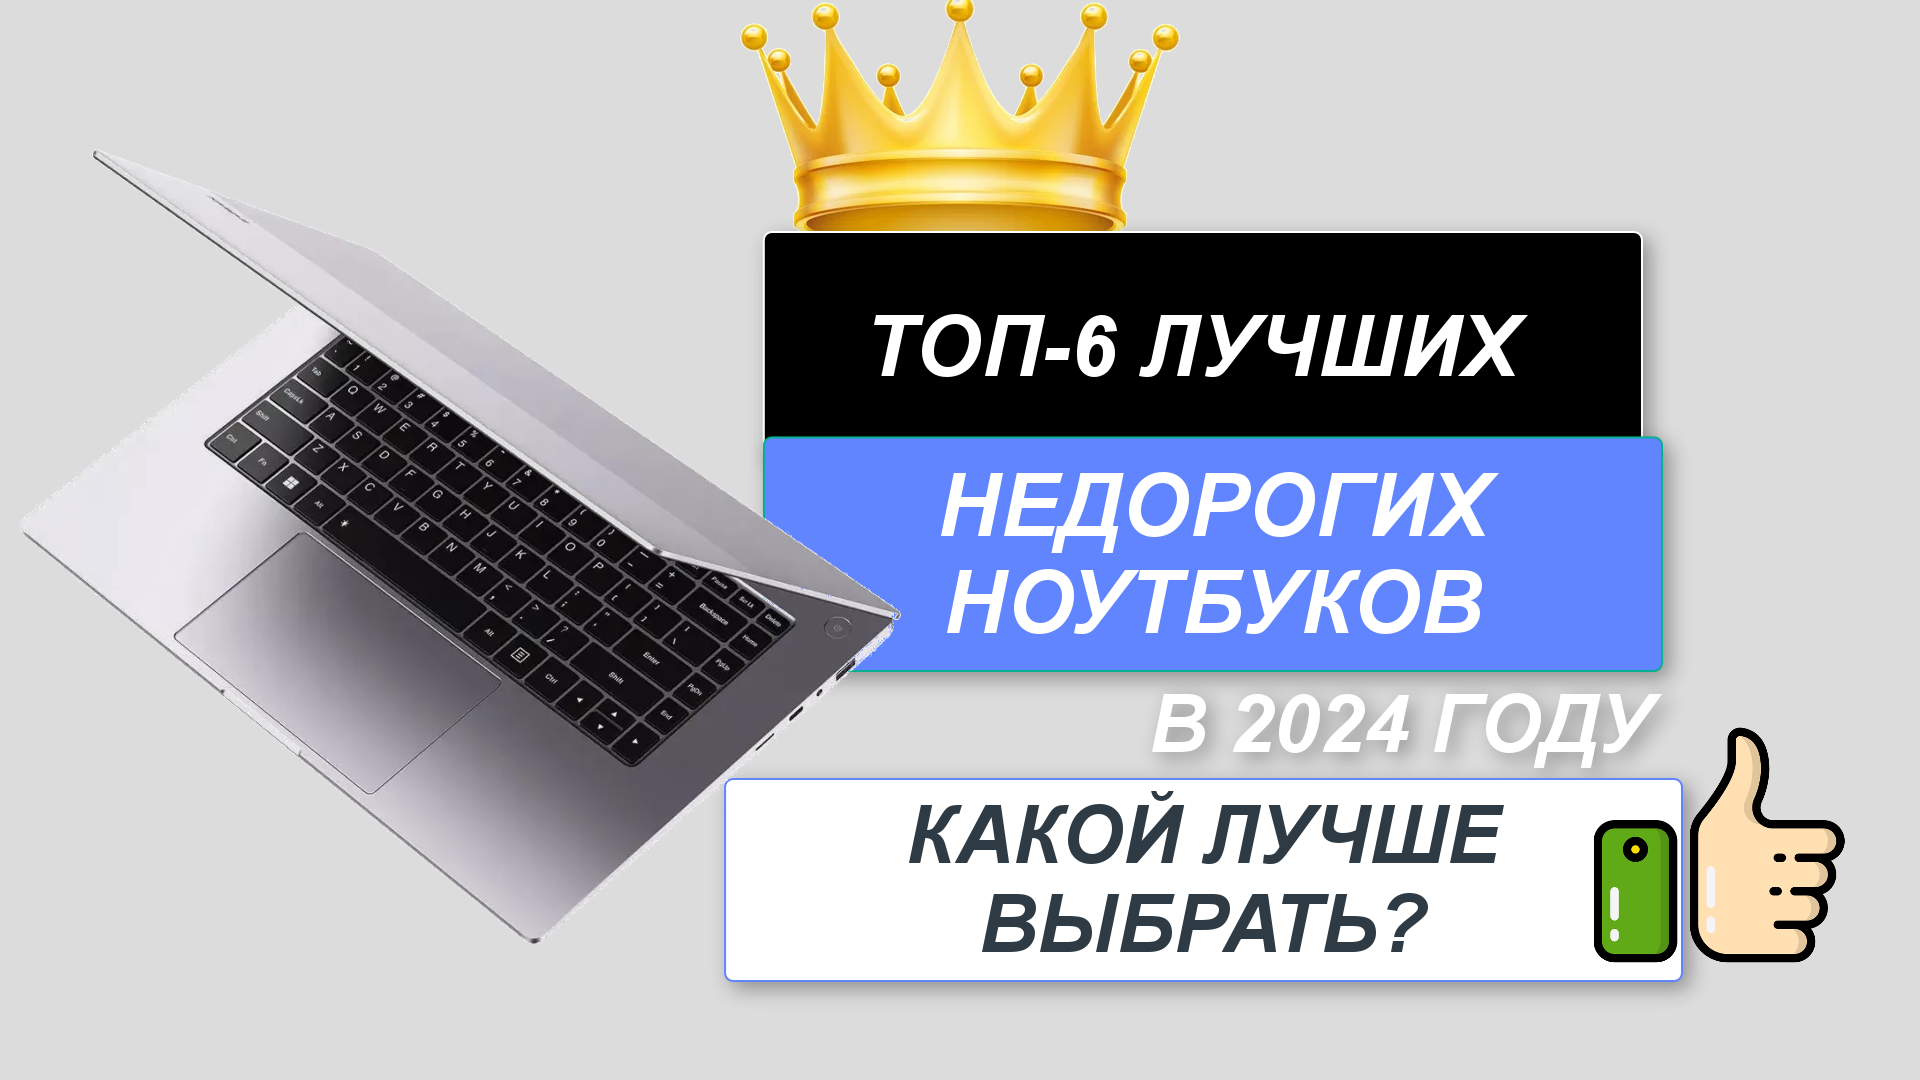 ТОП-6. 💻Лучшие недорогие ноутбуки. Рейтинг 2024🔥. Как выбрать бюджетный, но хороший ноутбук?